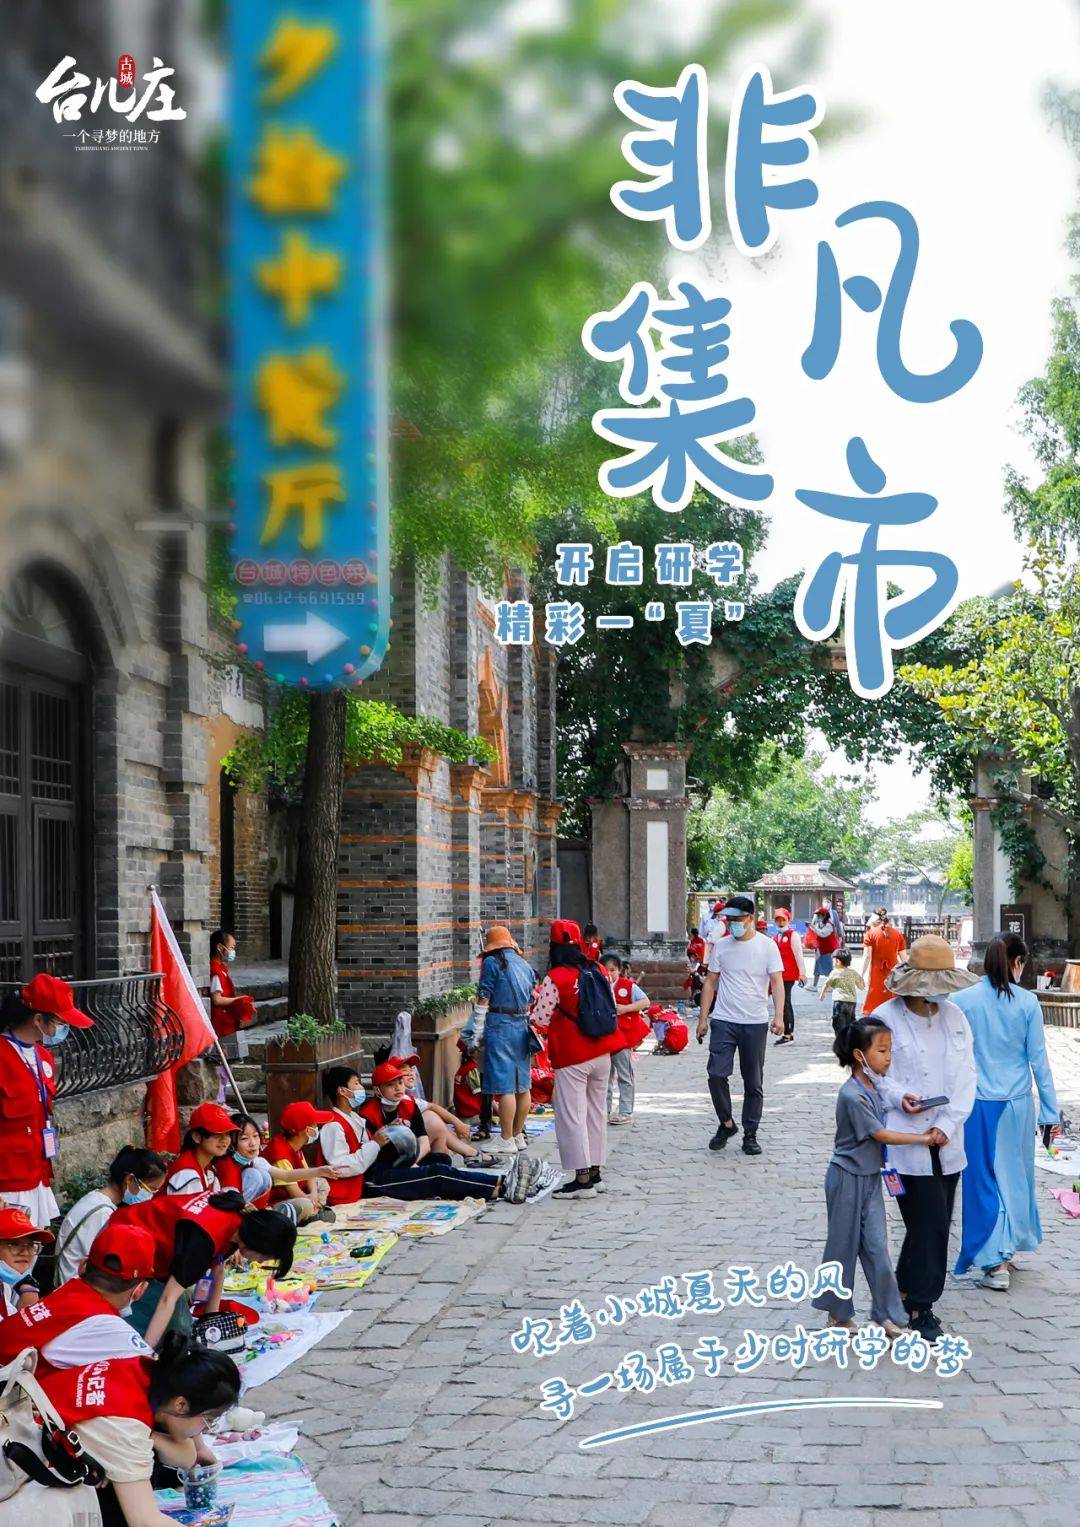 光明小记者庆六一非凡集市活动开启研学精彩一夏